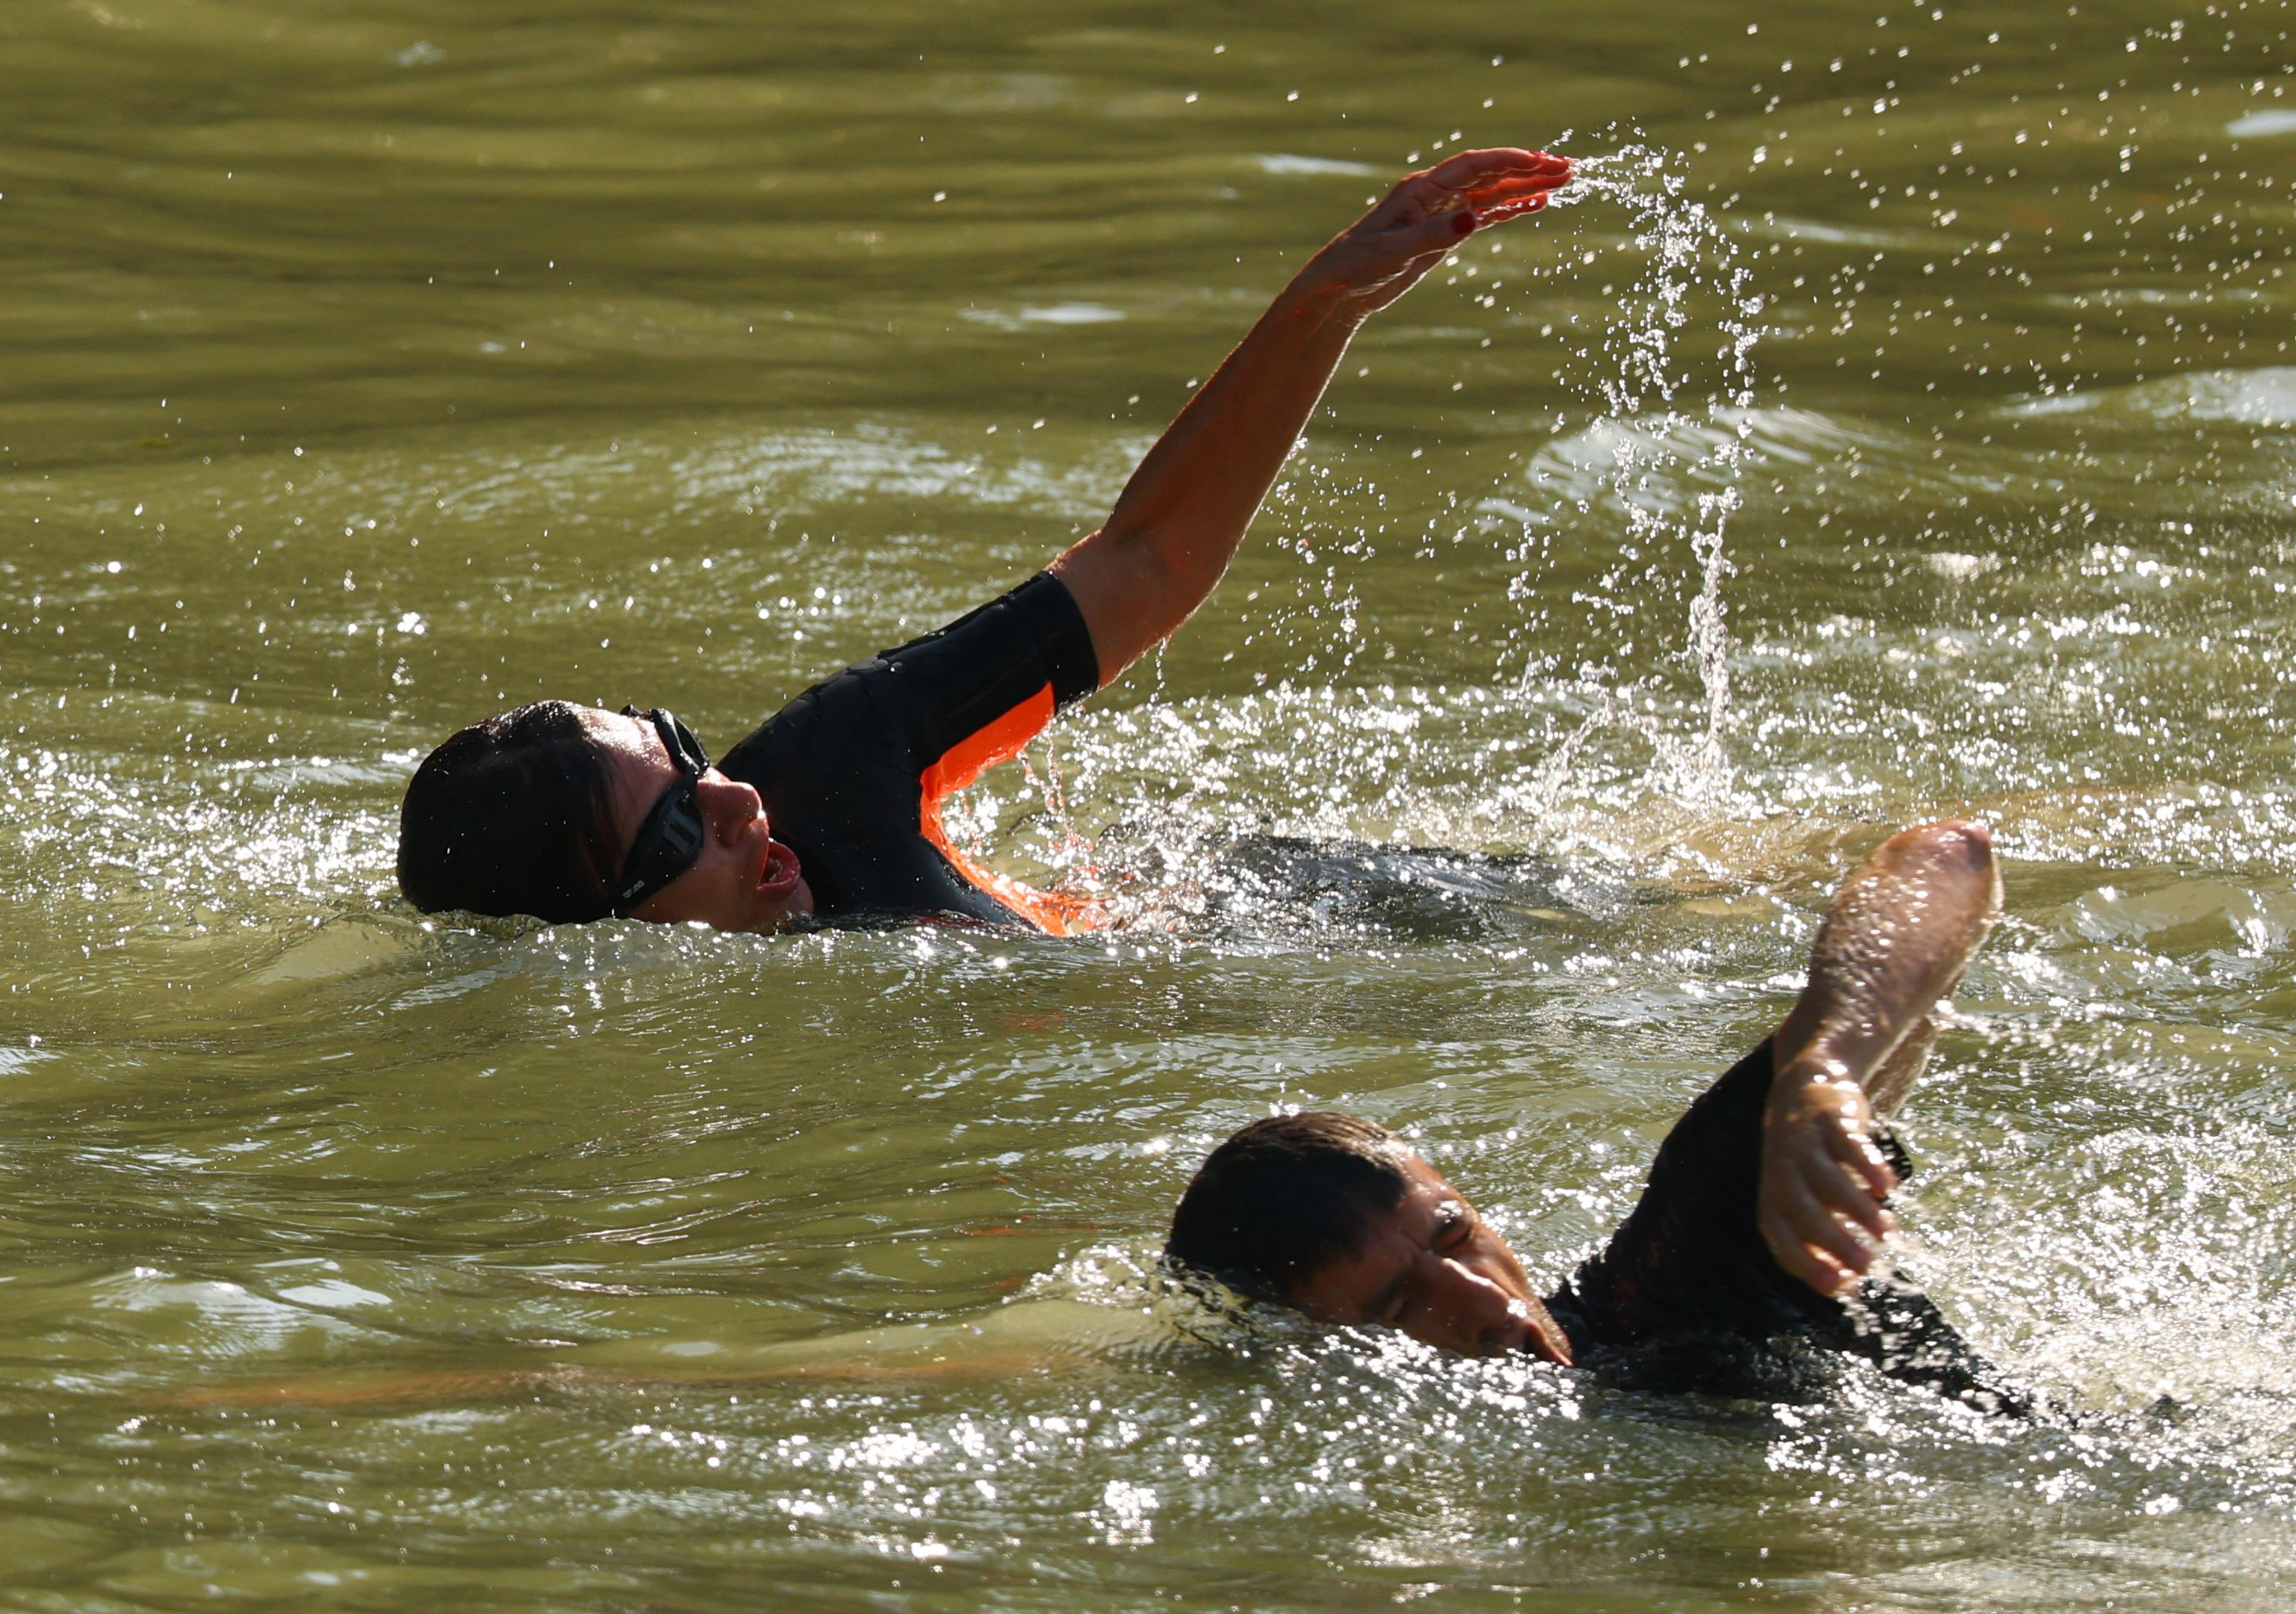 La nuotata di Hidalgo nelle (verdi) acque della Senna